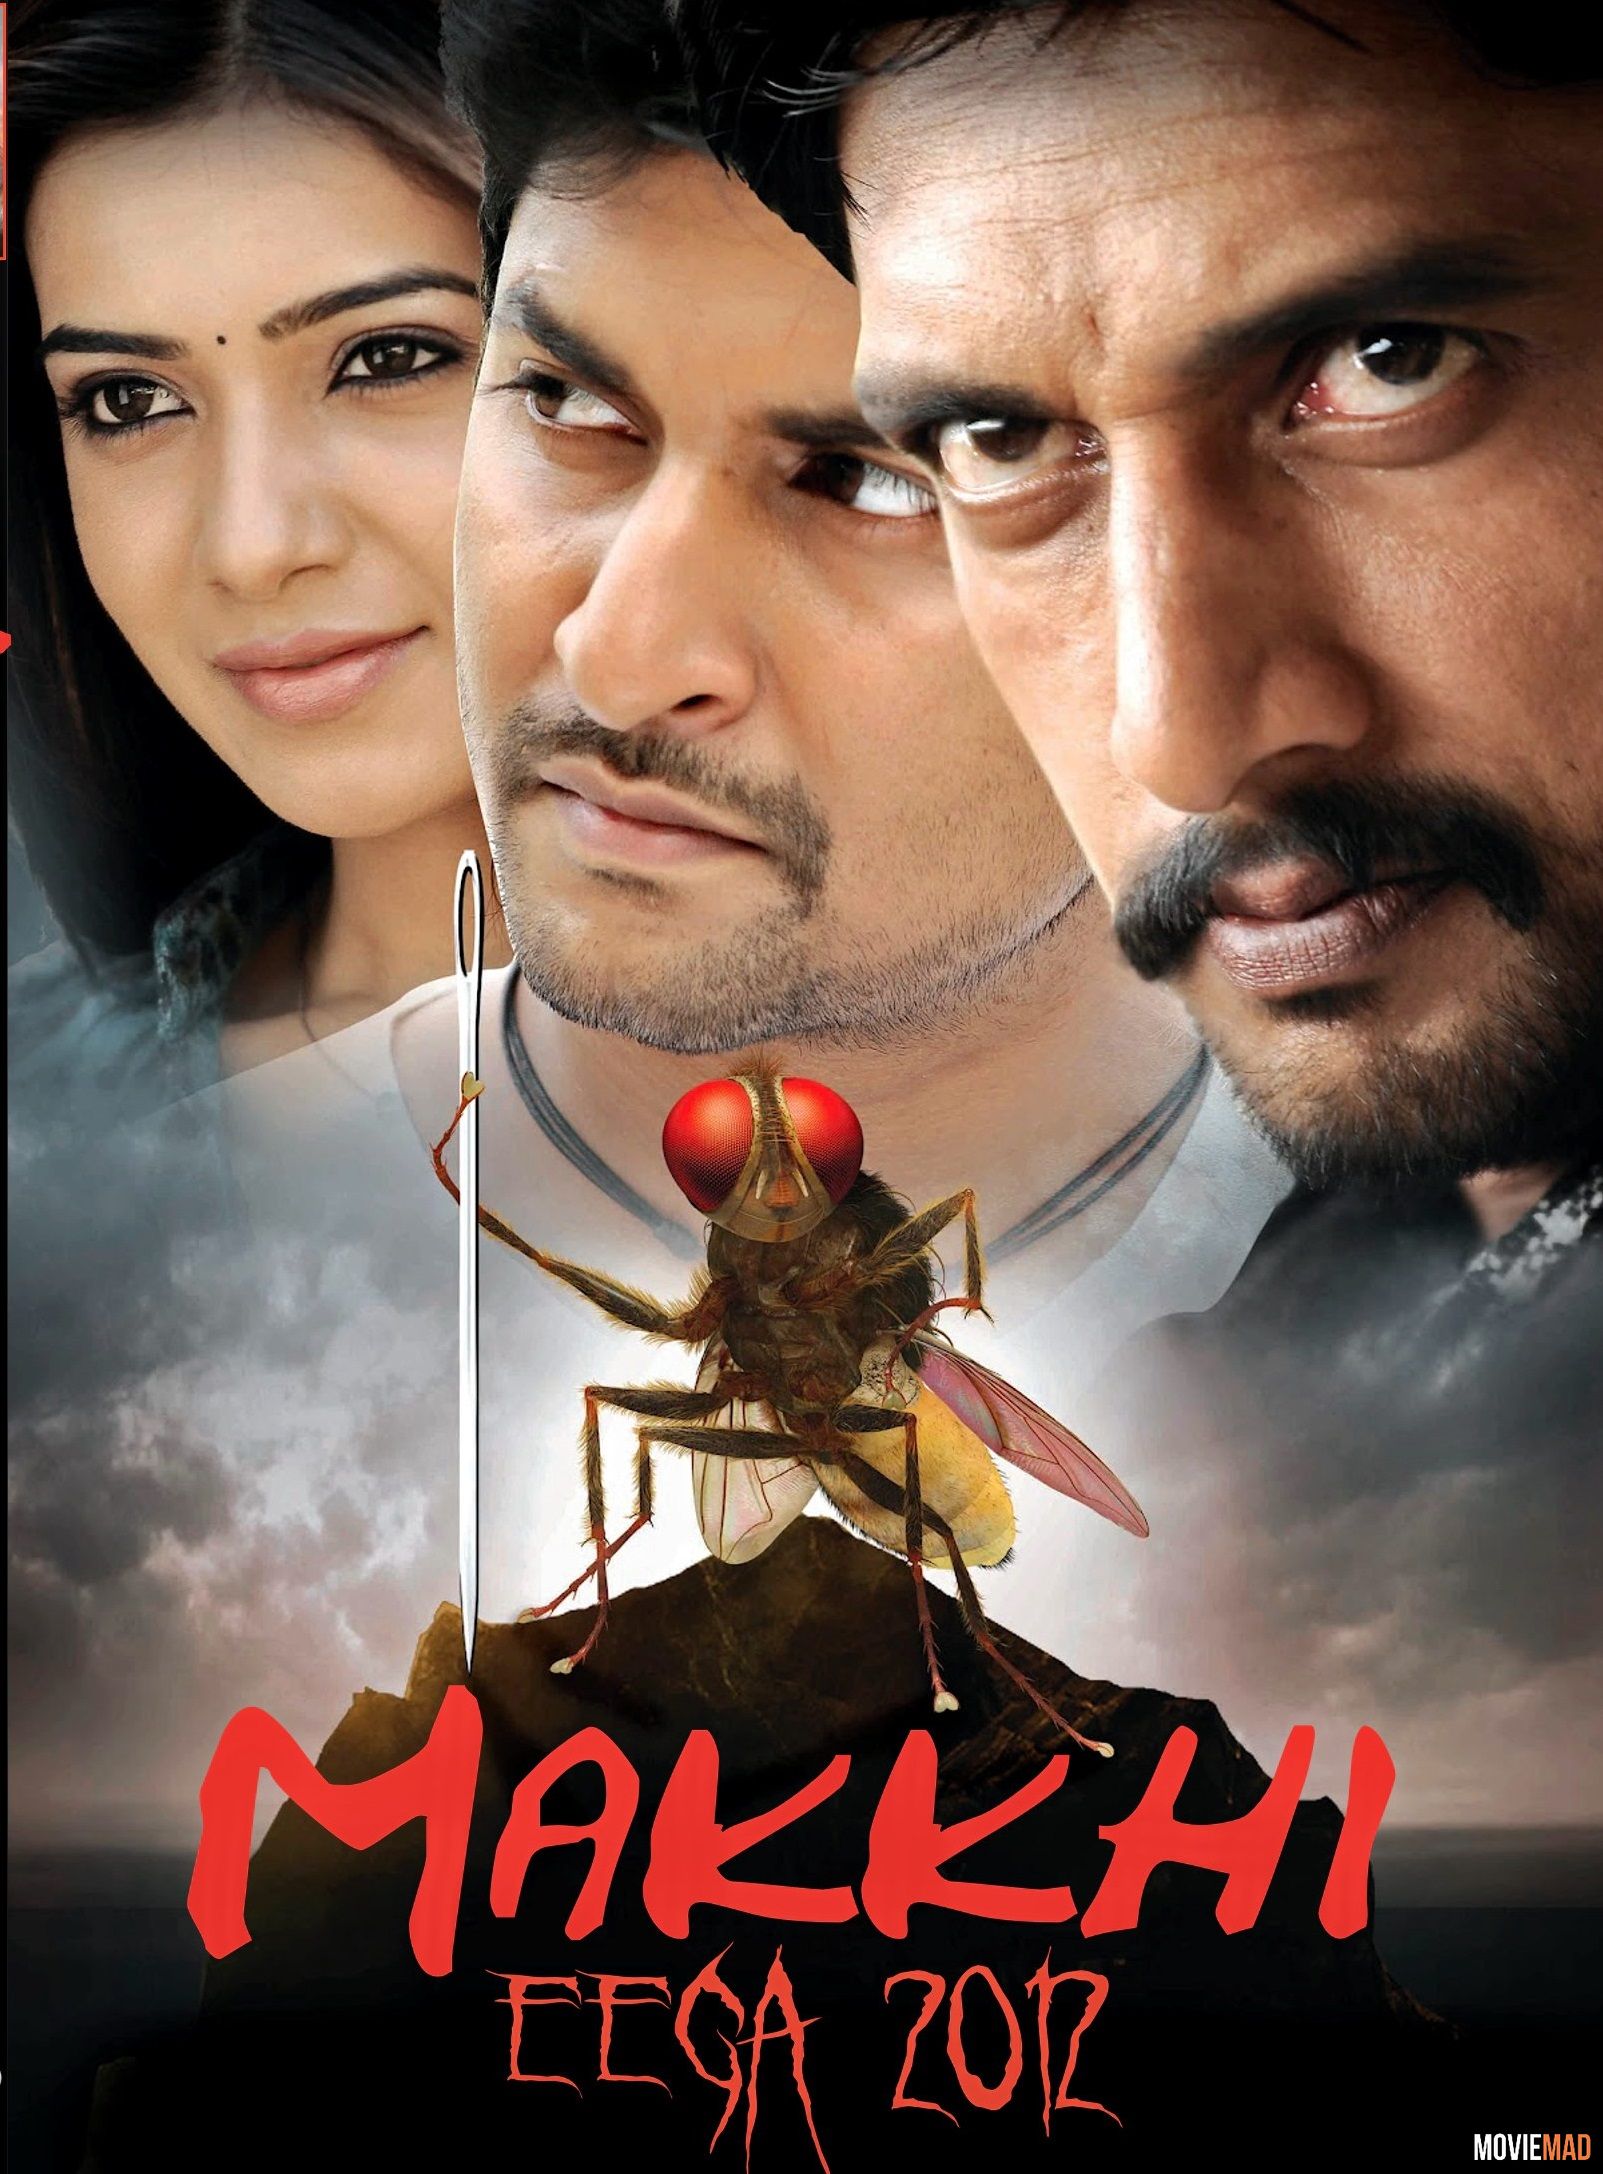 full moviesEega (Makkhi) 2012 UNCUT Hindi Dubbed BluRay Full Movie 720p 480p